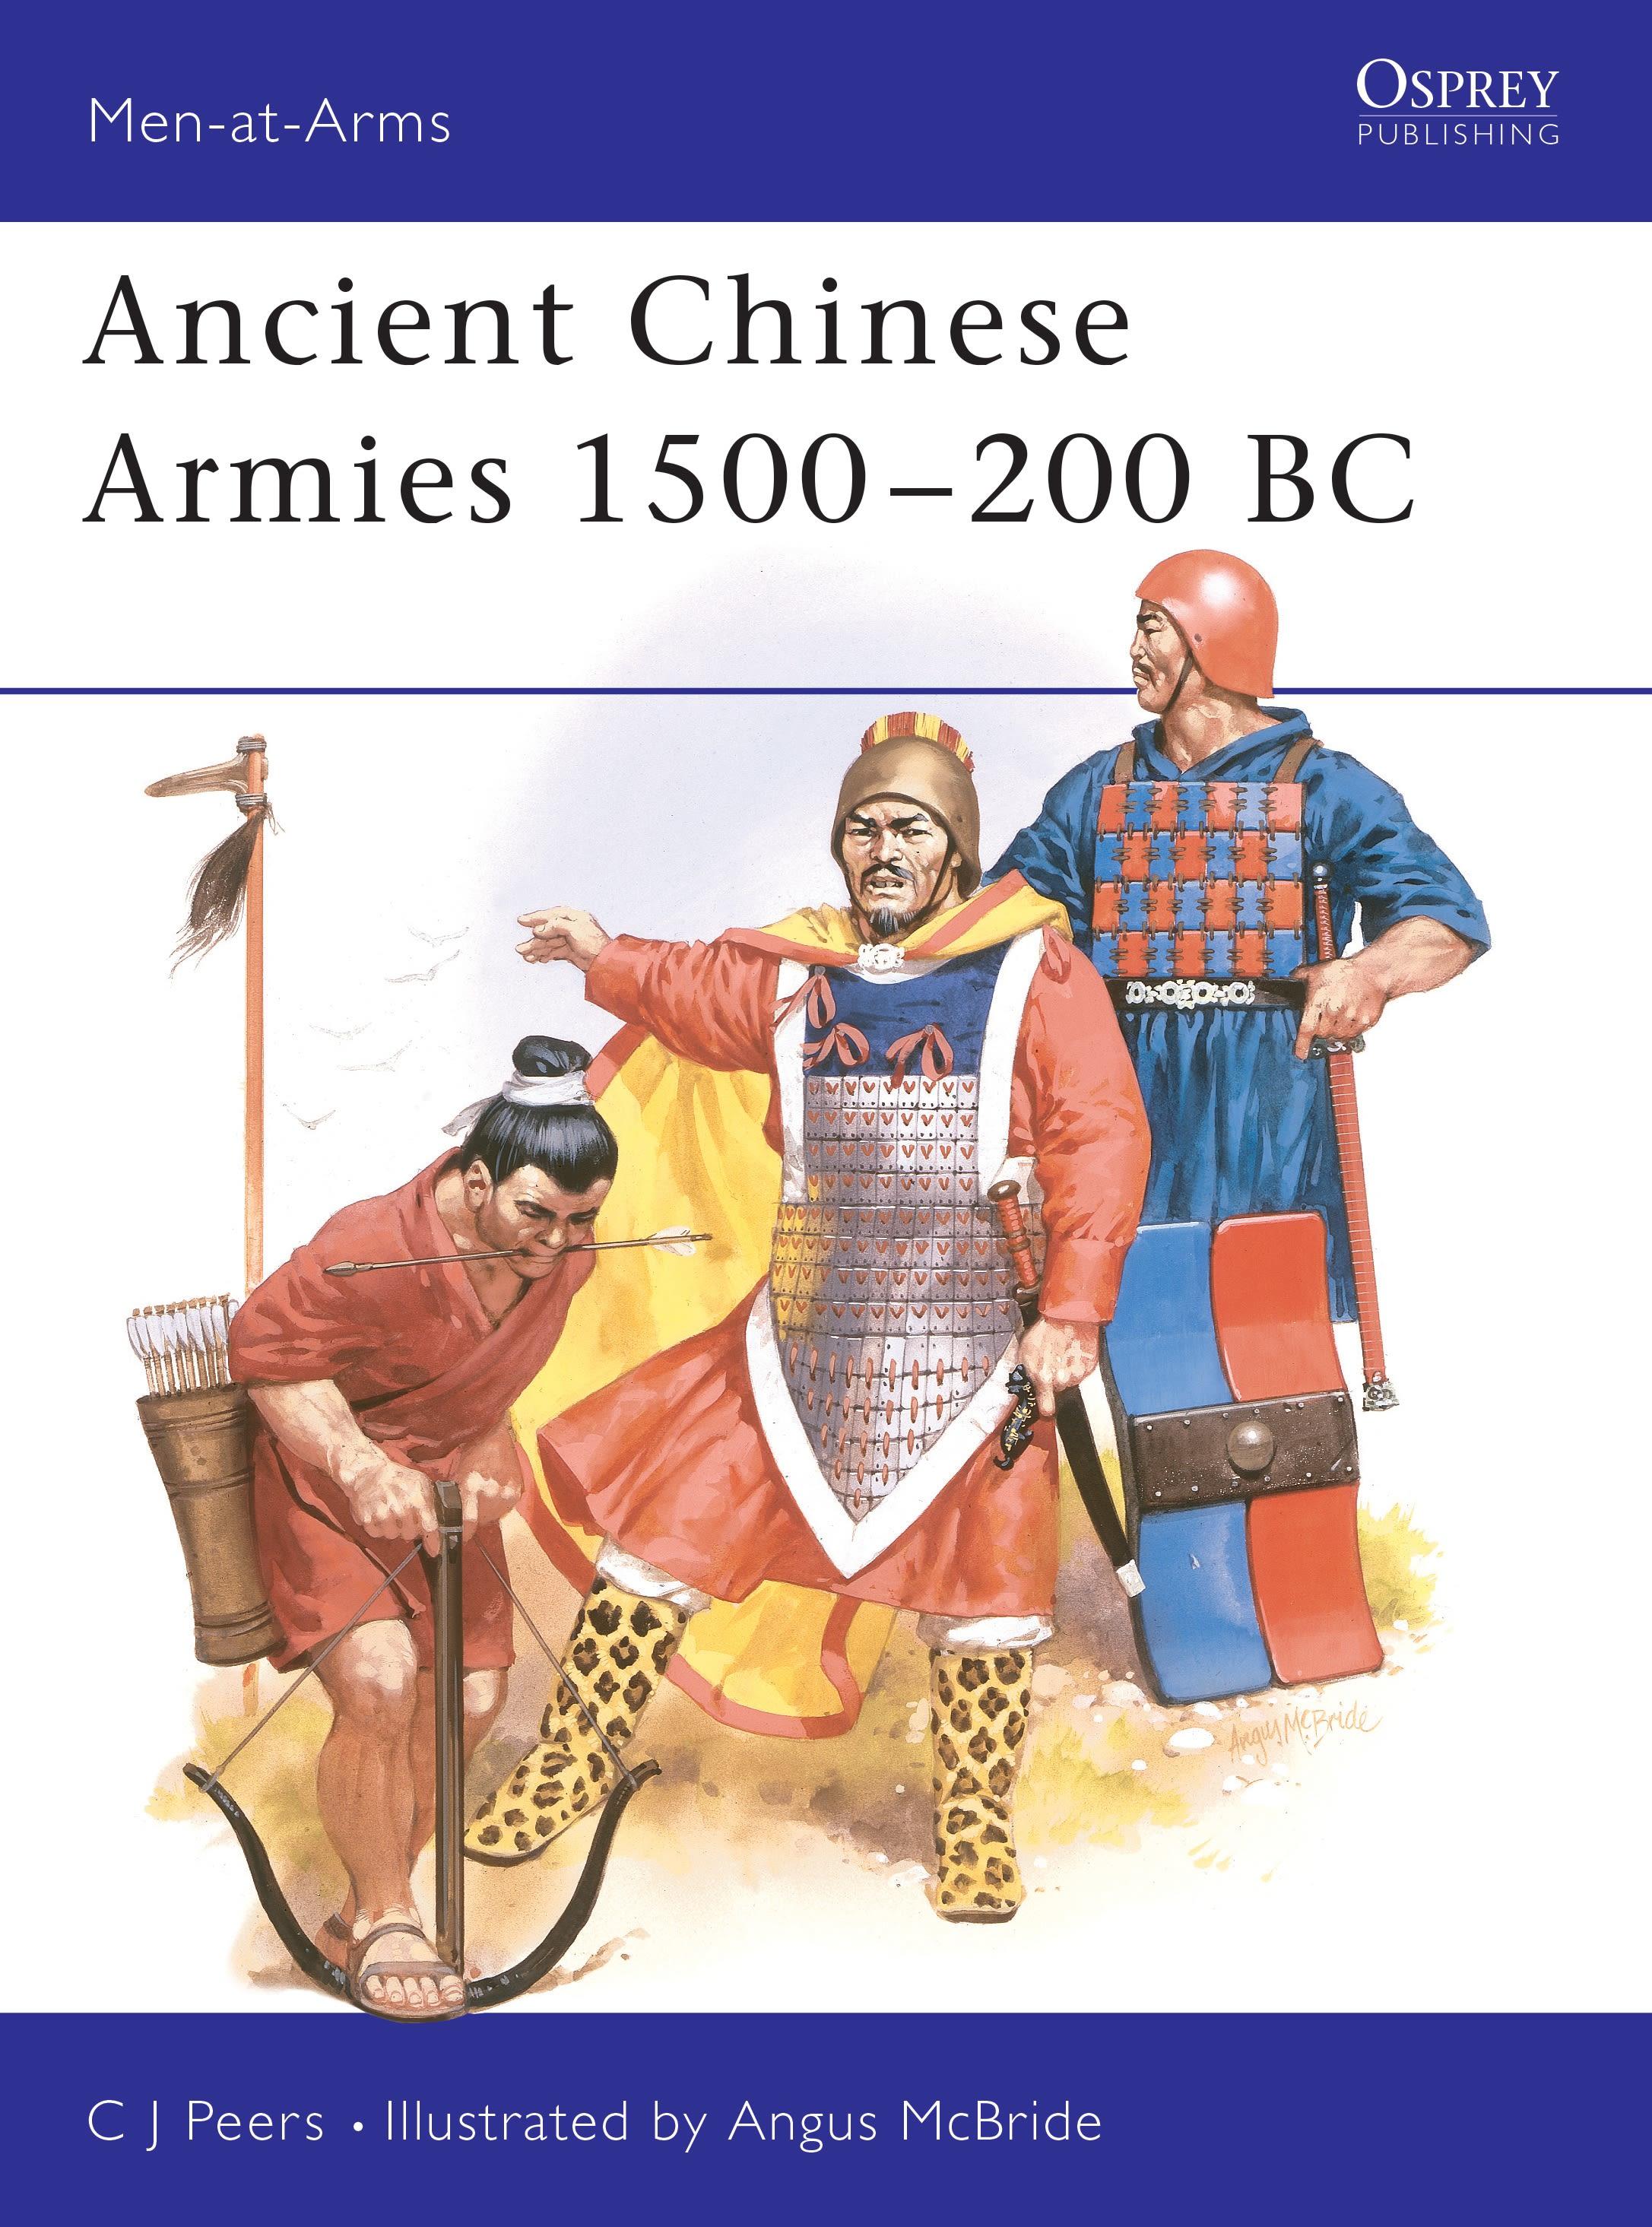 Ancient Chinese Armies 1500-200 BC / Cj Peers / Taschenbuch / Men-At-Arms (Osprey) / Kartoniert / Broschiert / Englisch / 1990 / Bloomsbury USA / EAN 9780850459425 - Peers, Cj